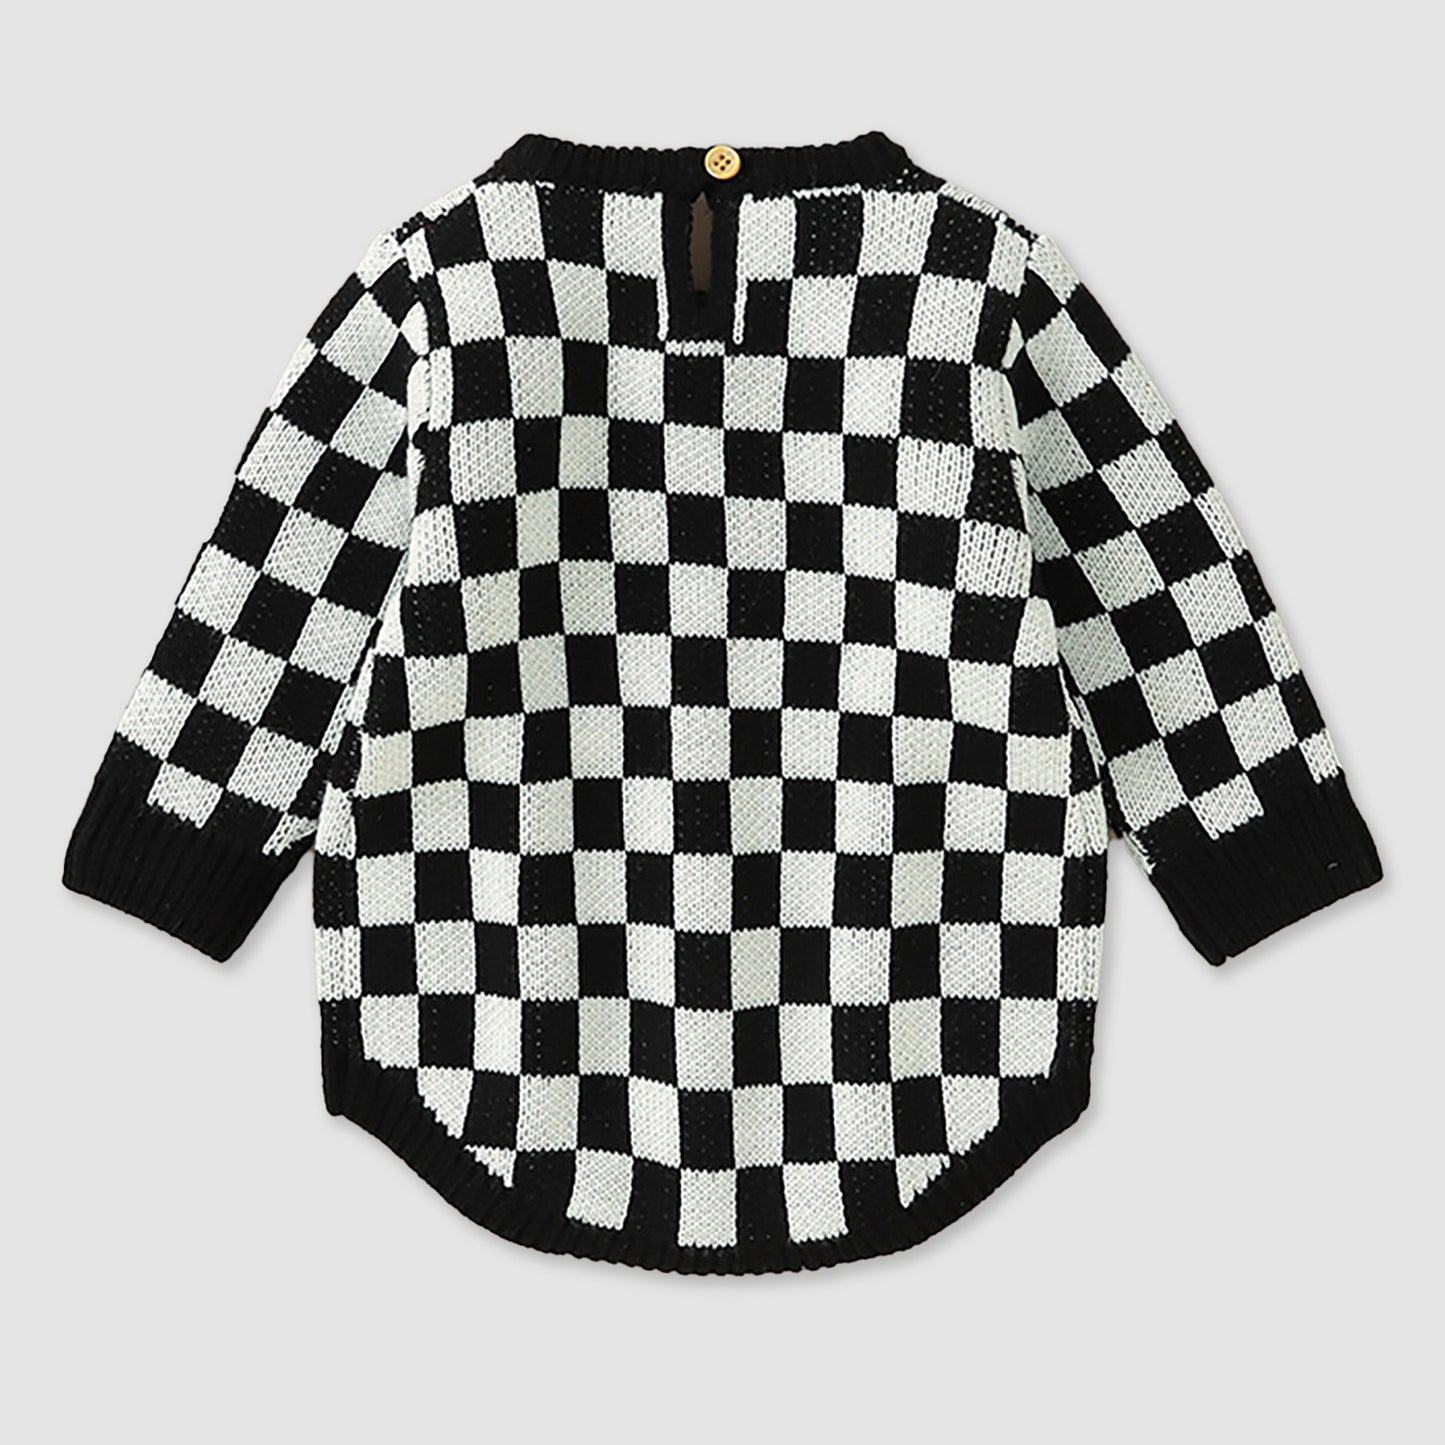 Checkered Sweater Onesie